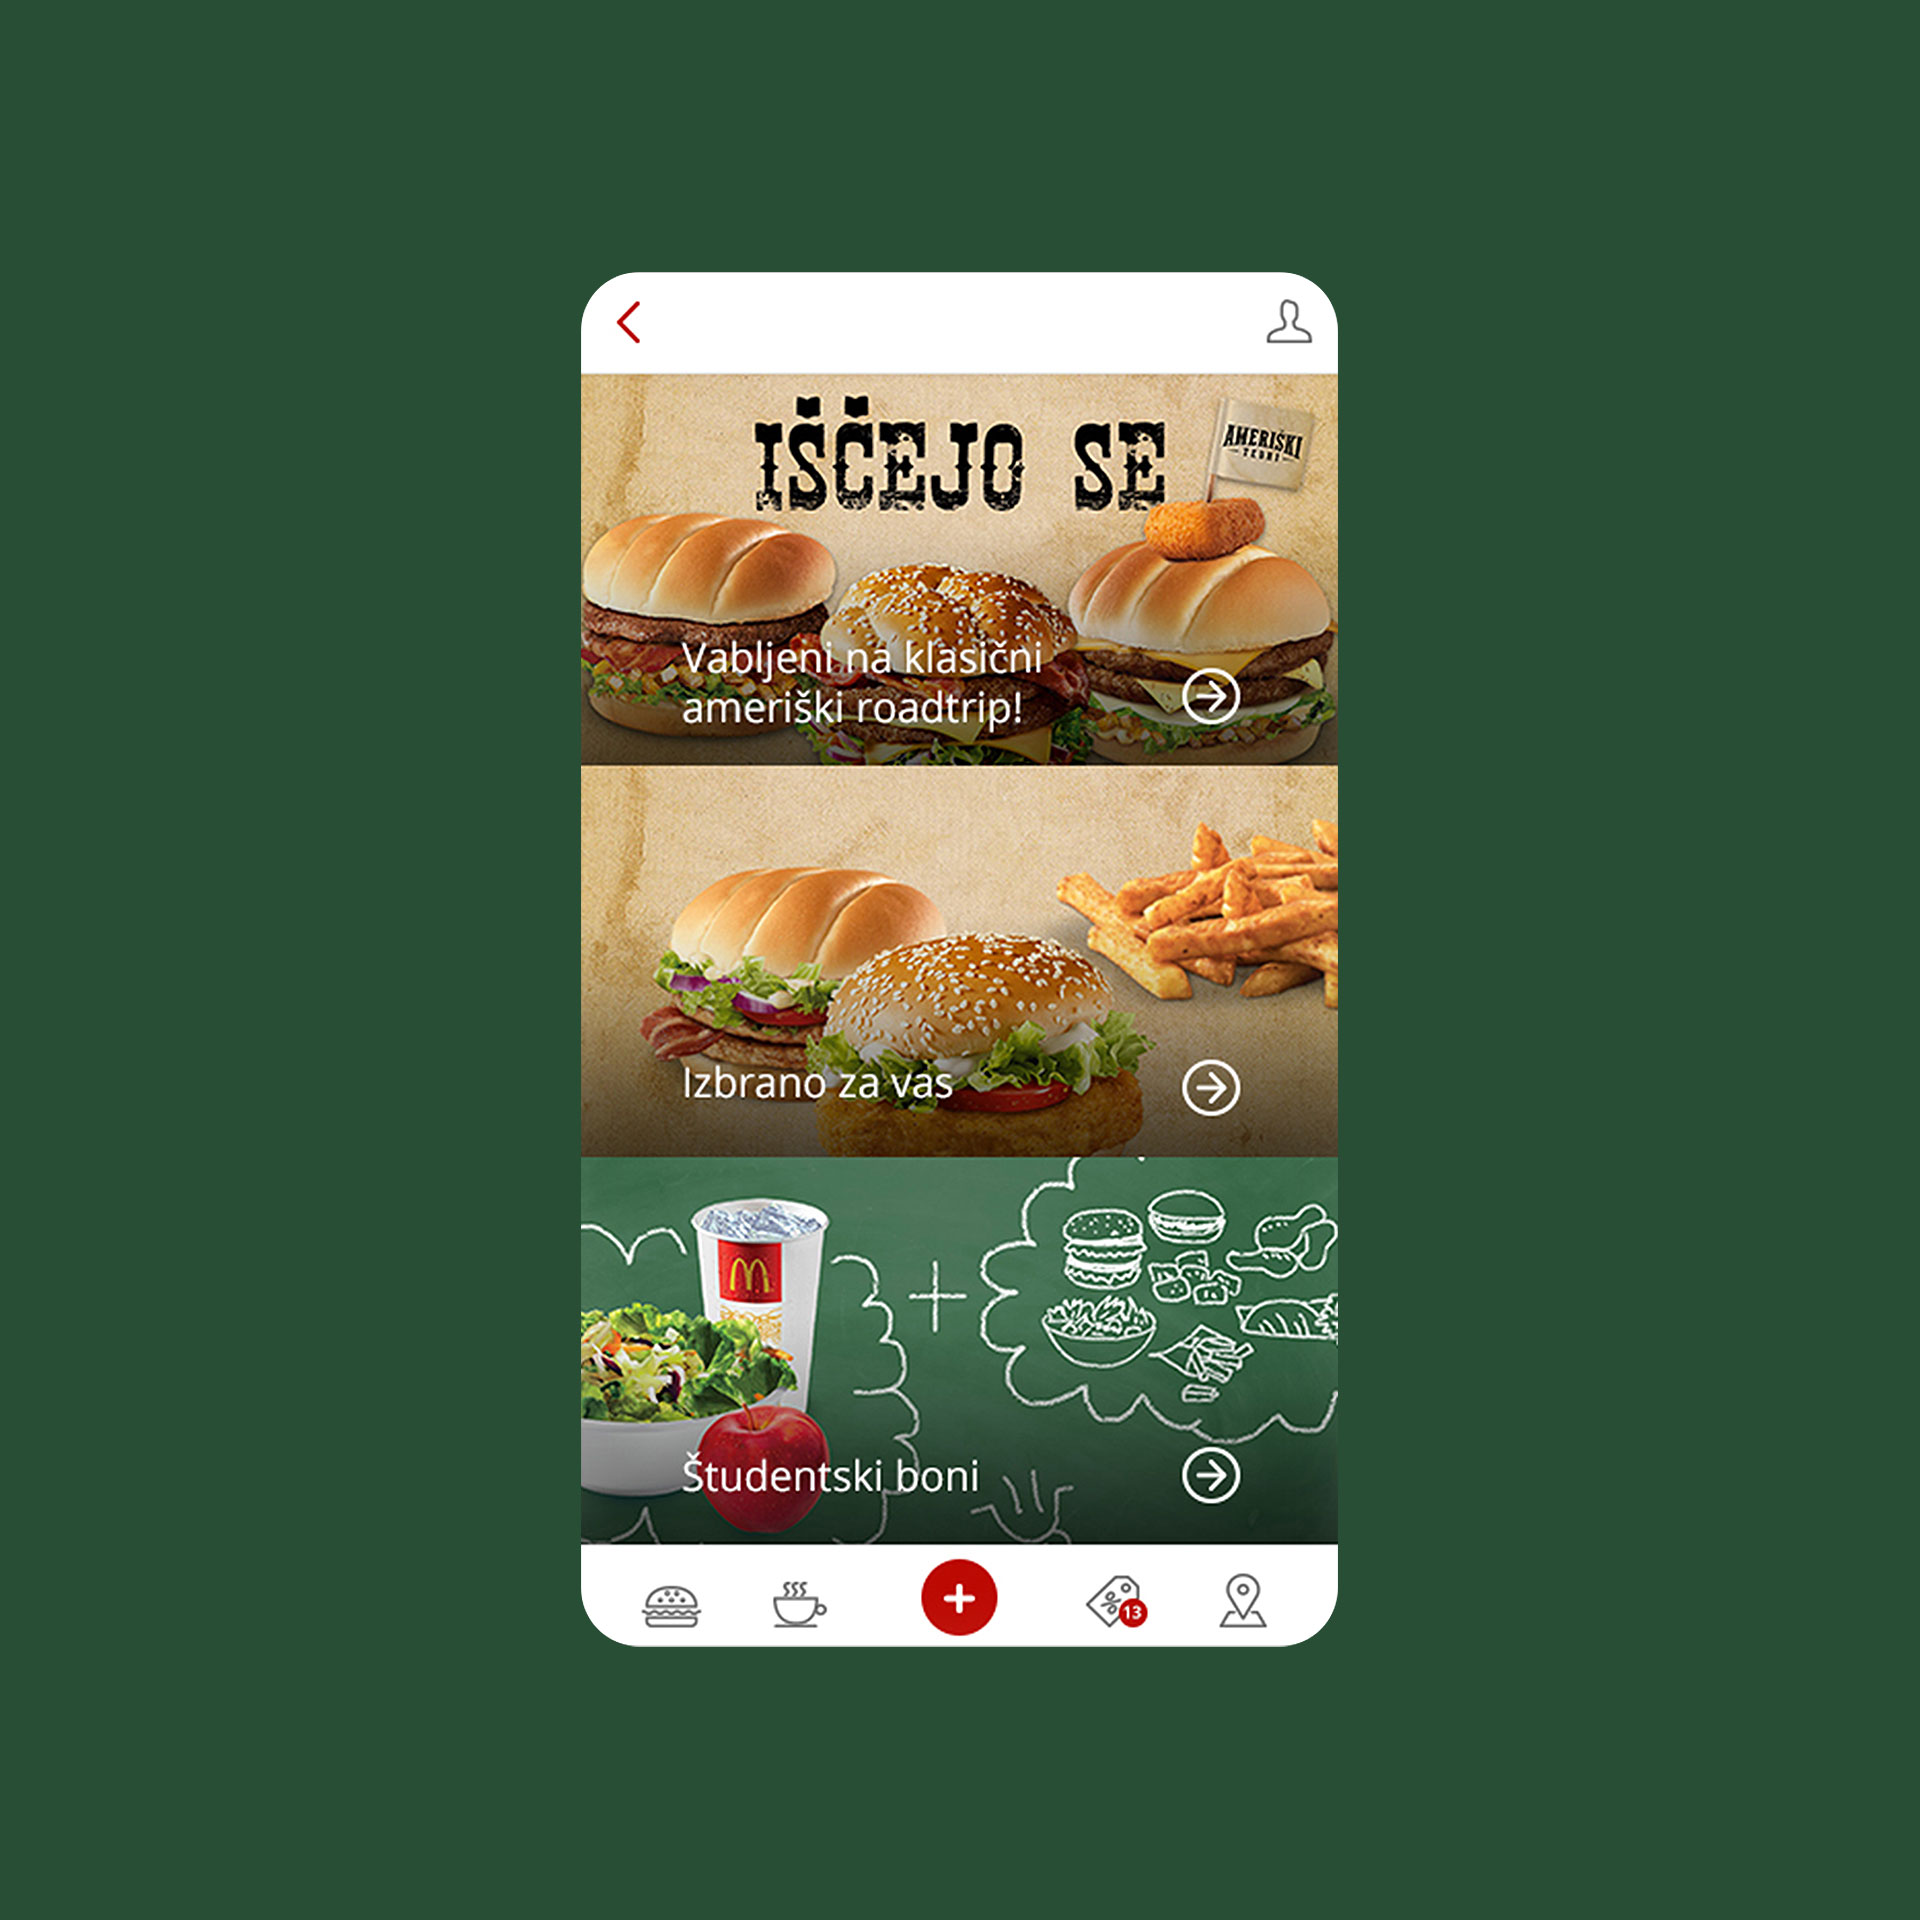 Detajl na McDonalds aplikaciji